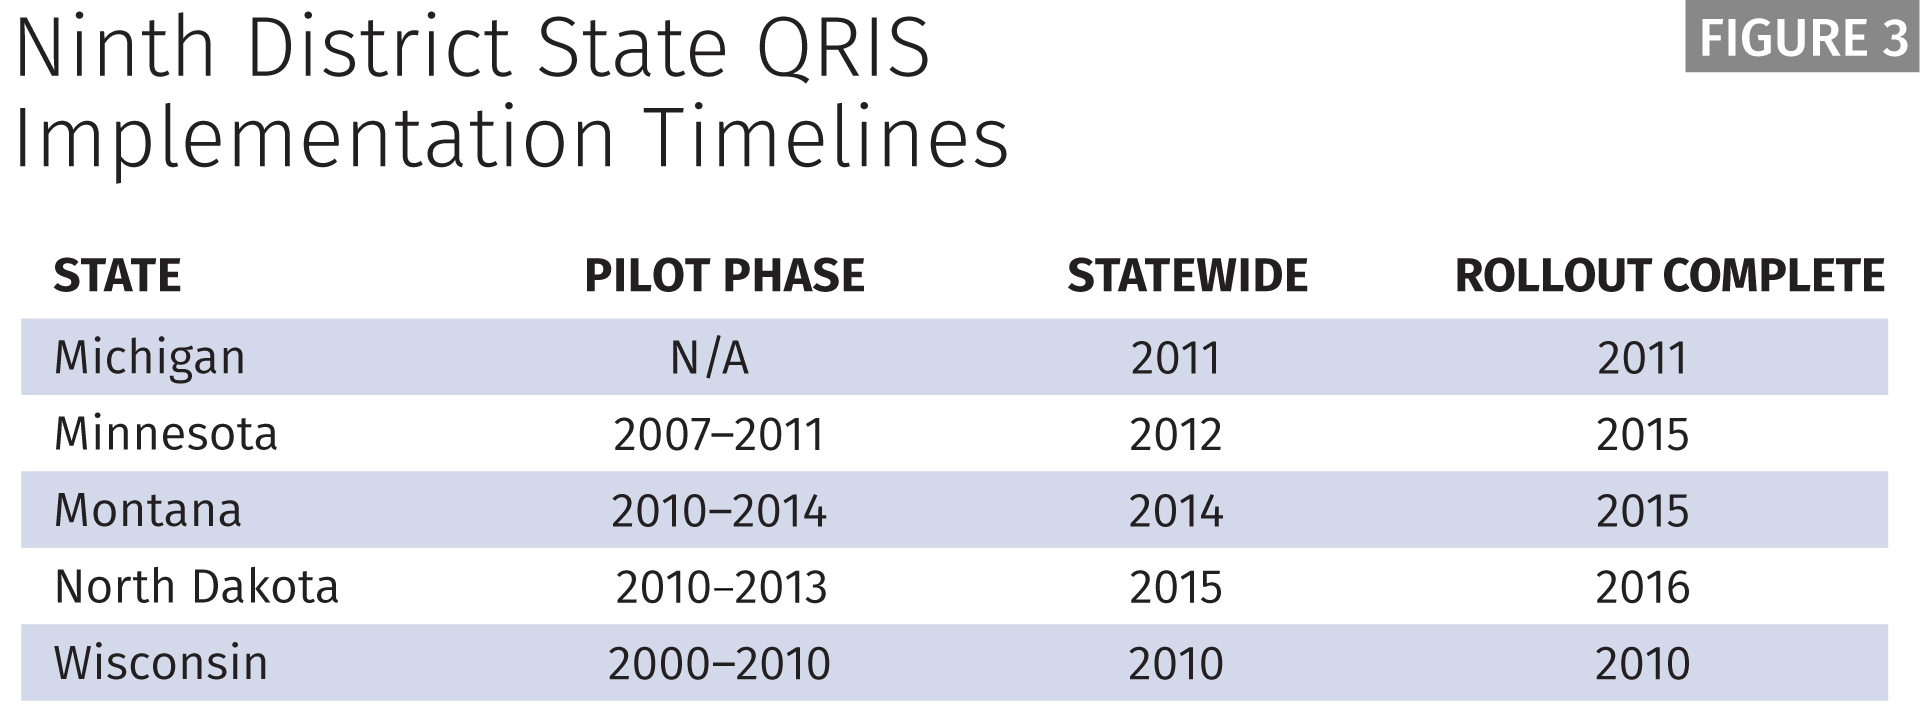 QRIS Implementation Timelines